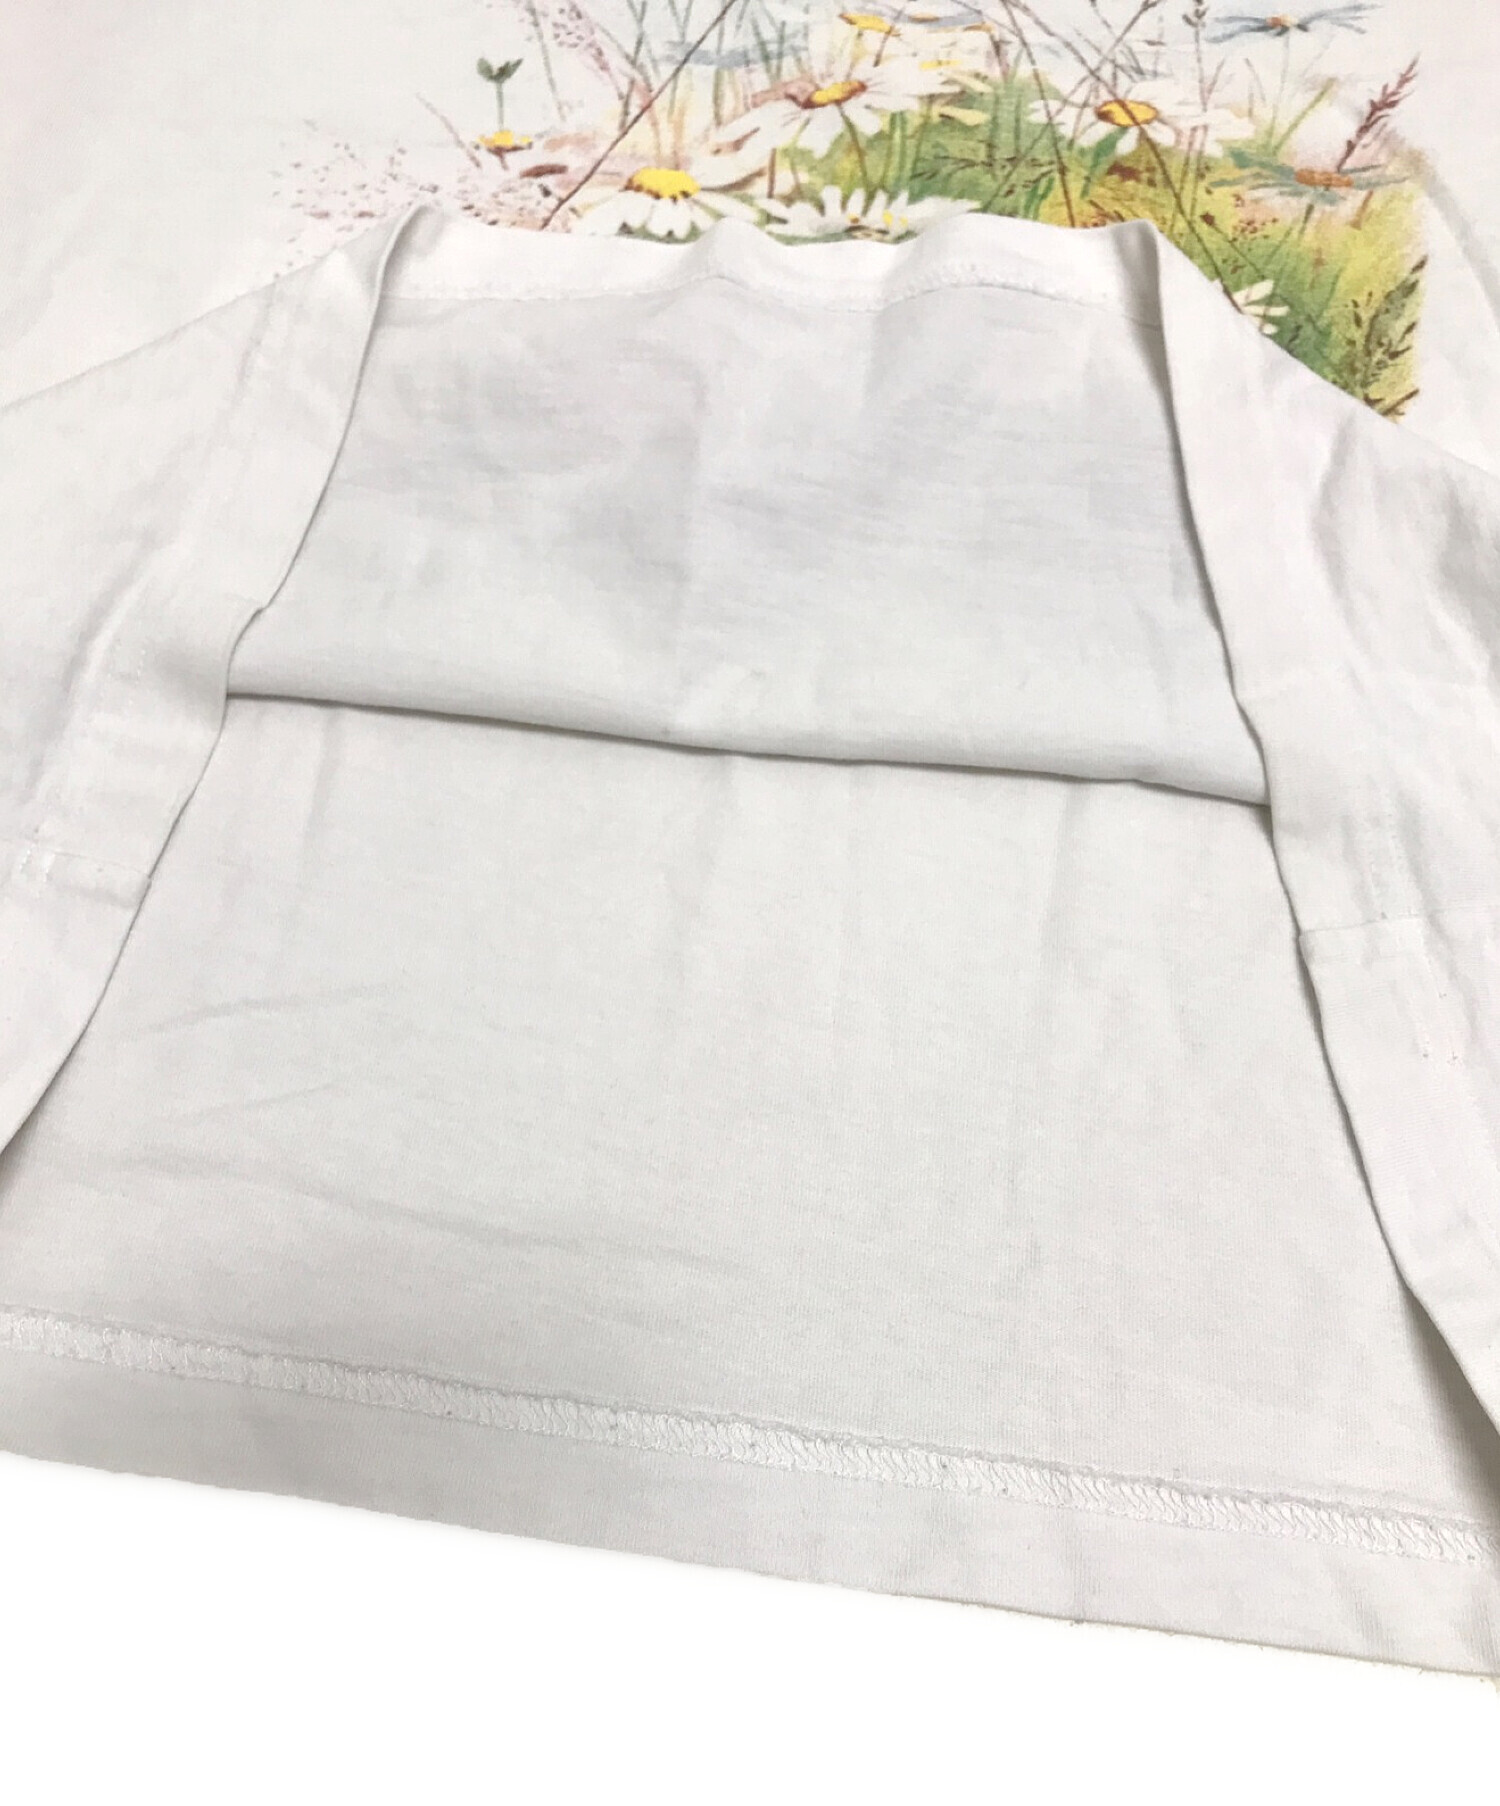 KITH (キス) 22SSフラワープリントTシャツ ホワイト サイズ:S